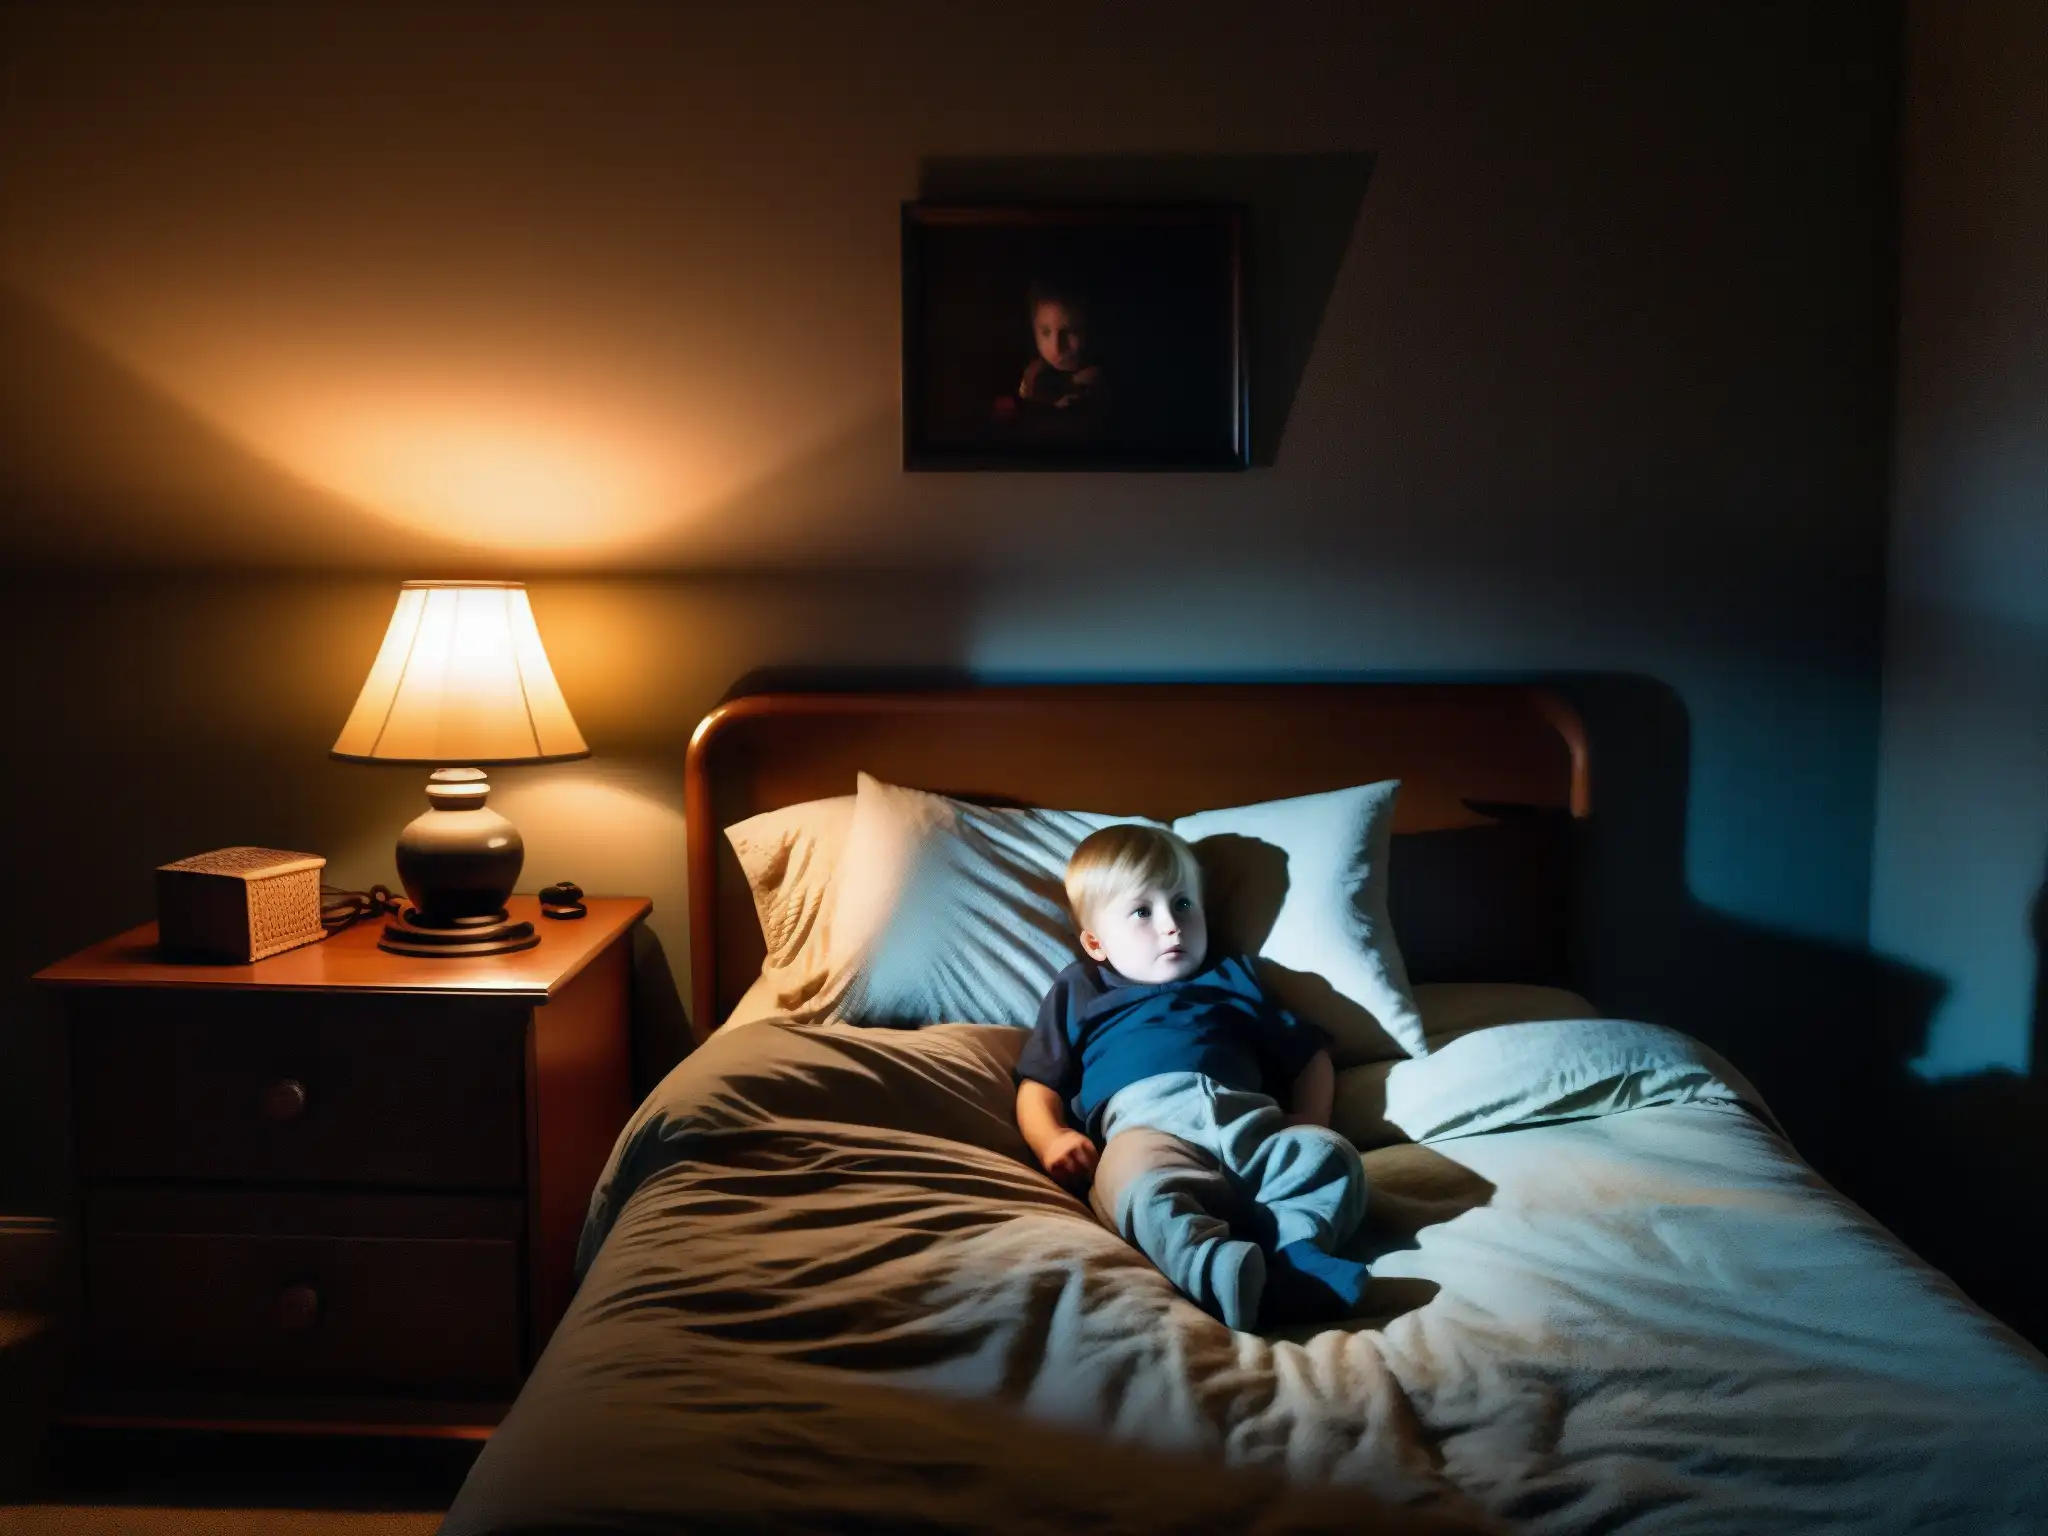 Una habitación infantil tenue con una luz nocturna proyectando sombras inquietantes